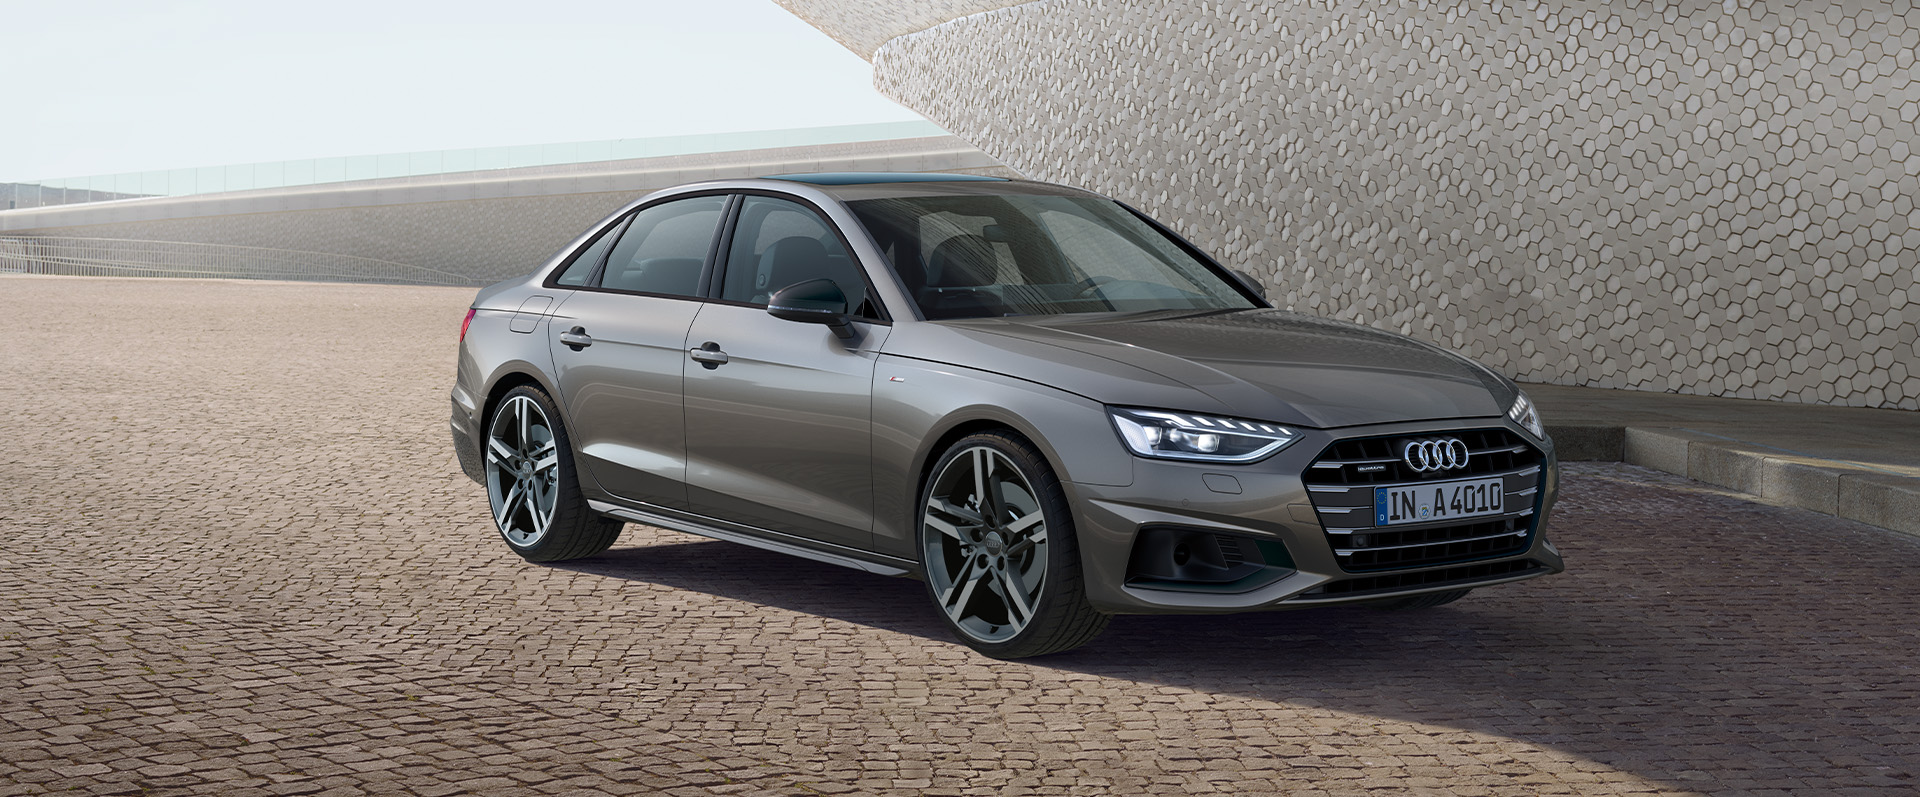 Conforto e Sofisticação. Audi A4 é a combinação perfeita.